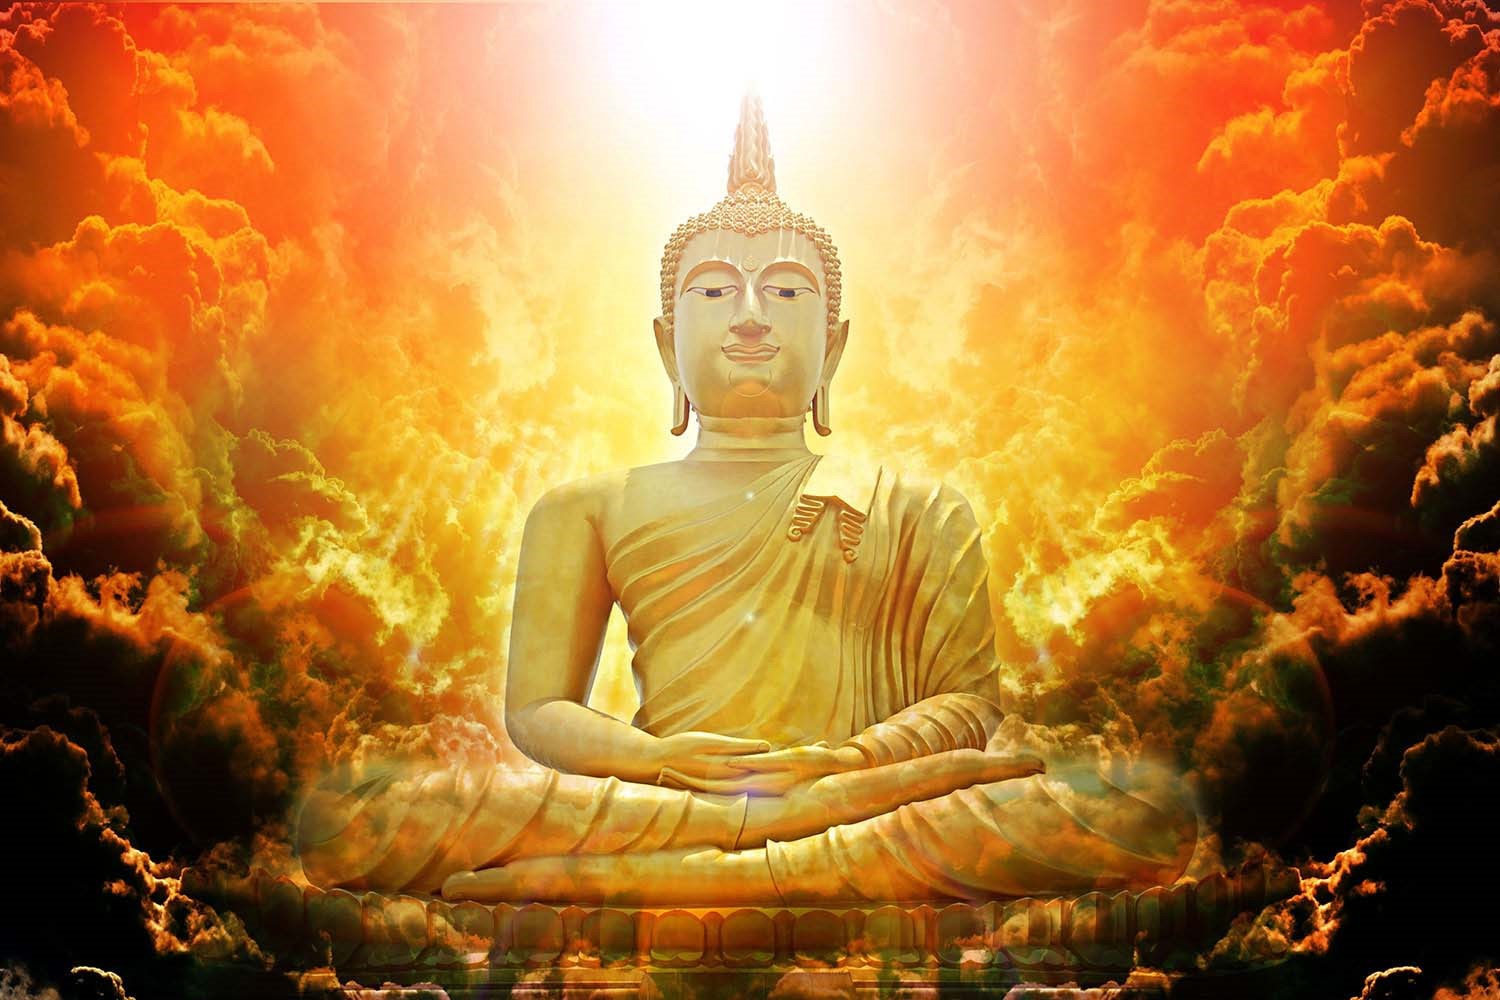 Giấc mơ về Phật luôn đem lại tín hiệu bình an trong cuộc sống